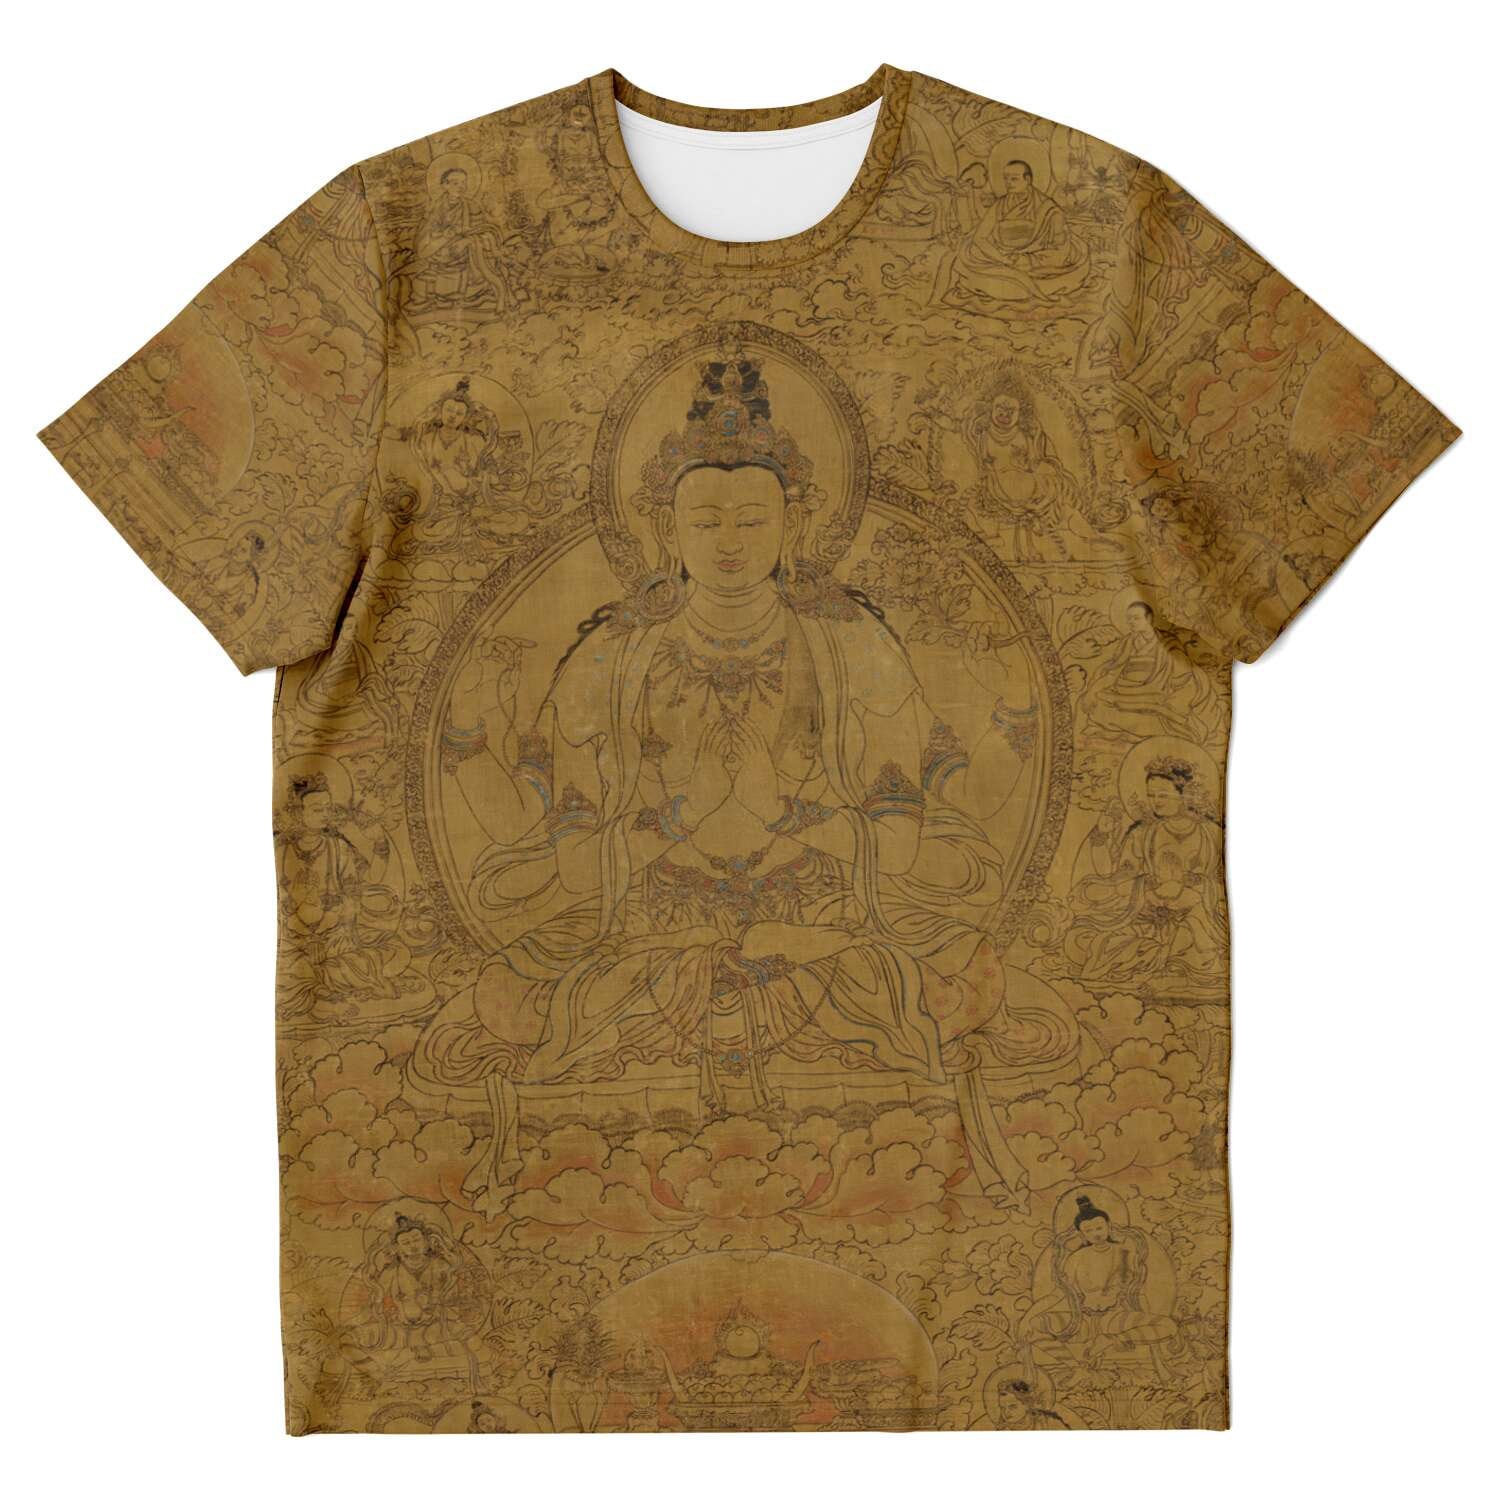 T-shirt Gold Avalokiteshvara, Tibetan Buddha Dalai Lama Incarnation, Reincarnation, Om Mantra Padme Hum Graphic Art T-Shirt